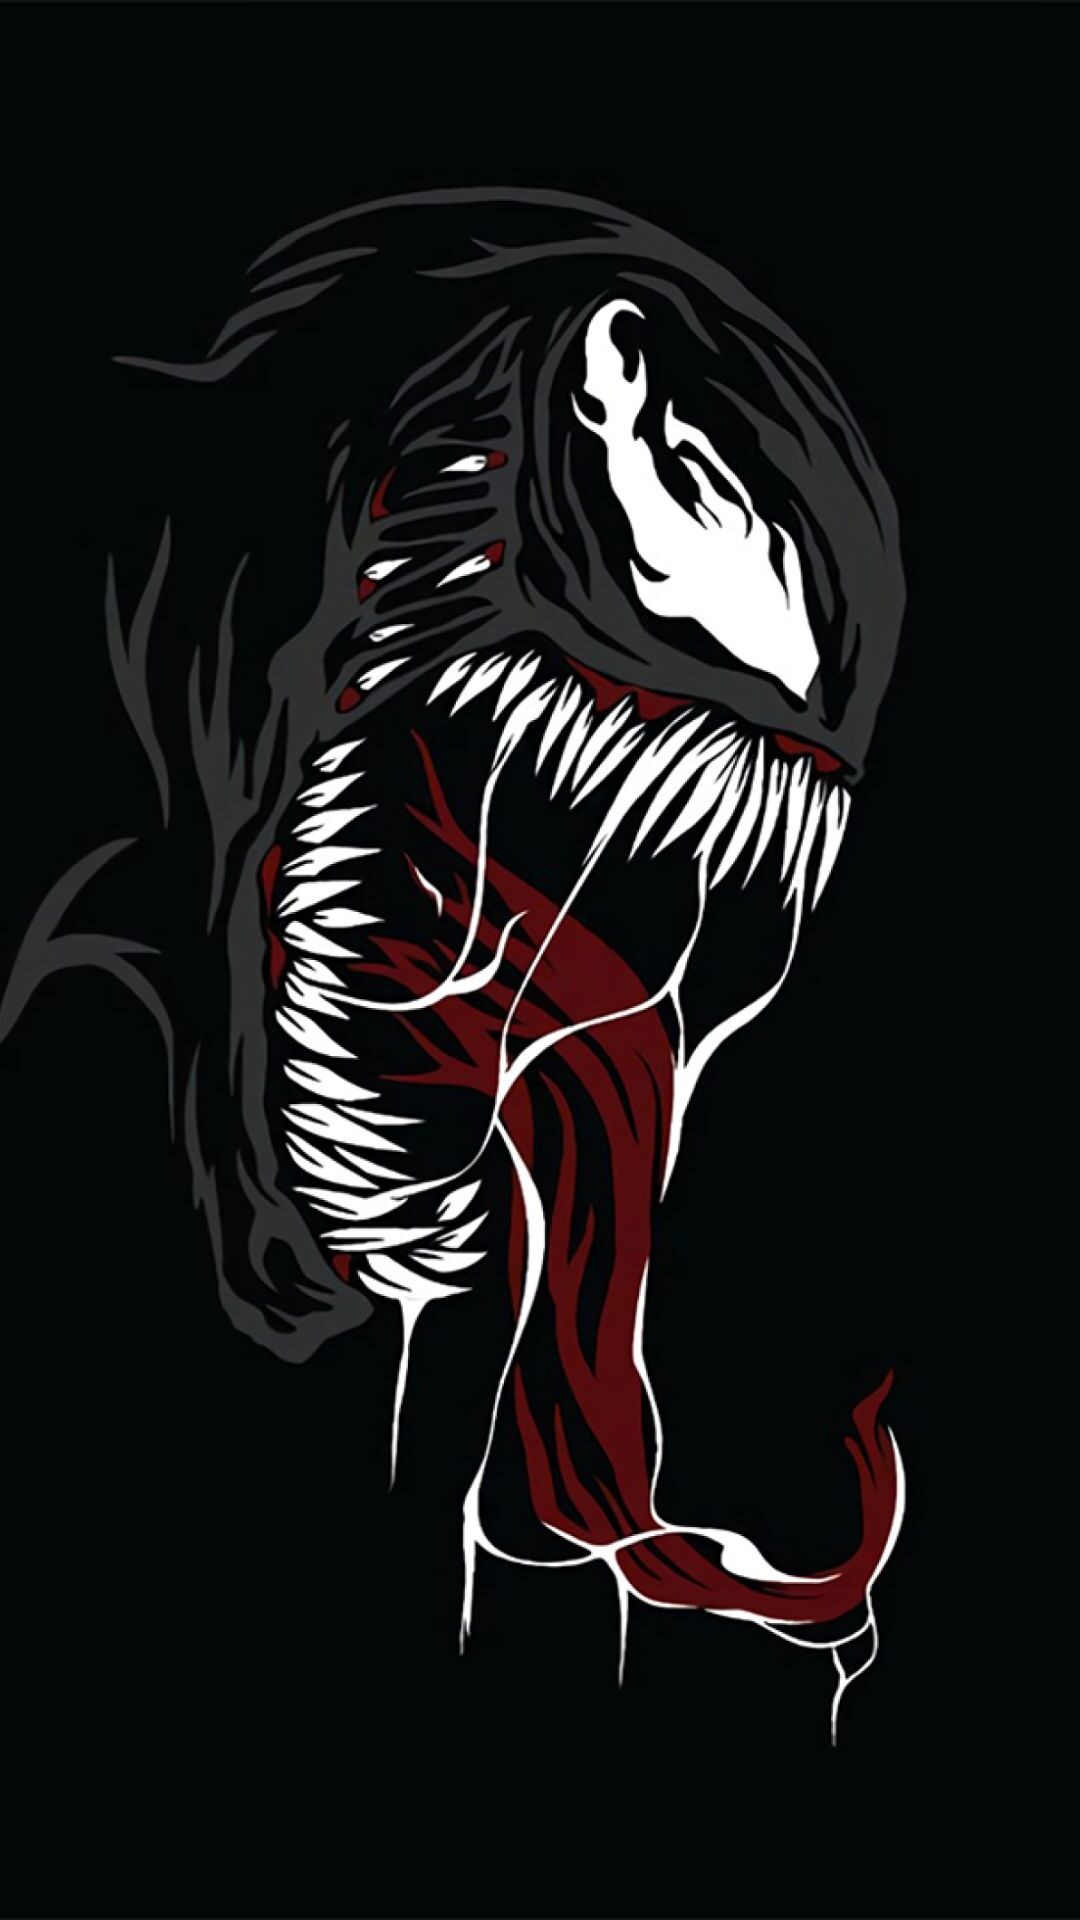 Bộ ảnh nền Venom độc đáo cho smartphone và PC